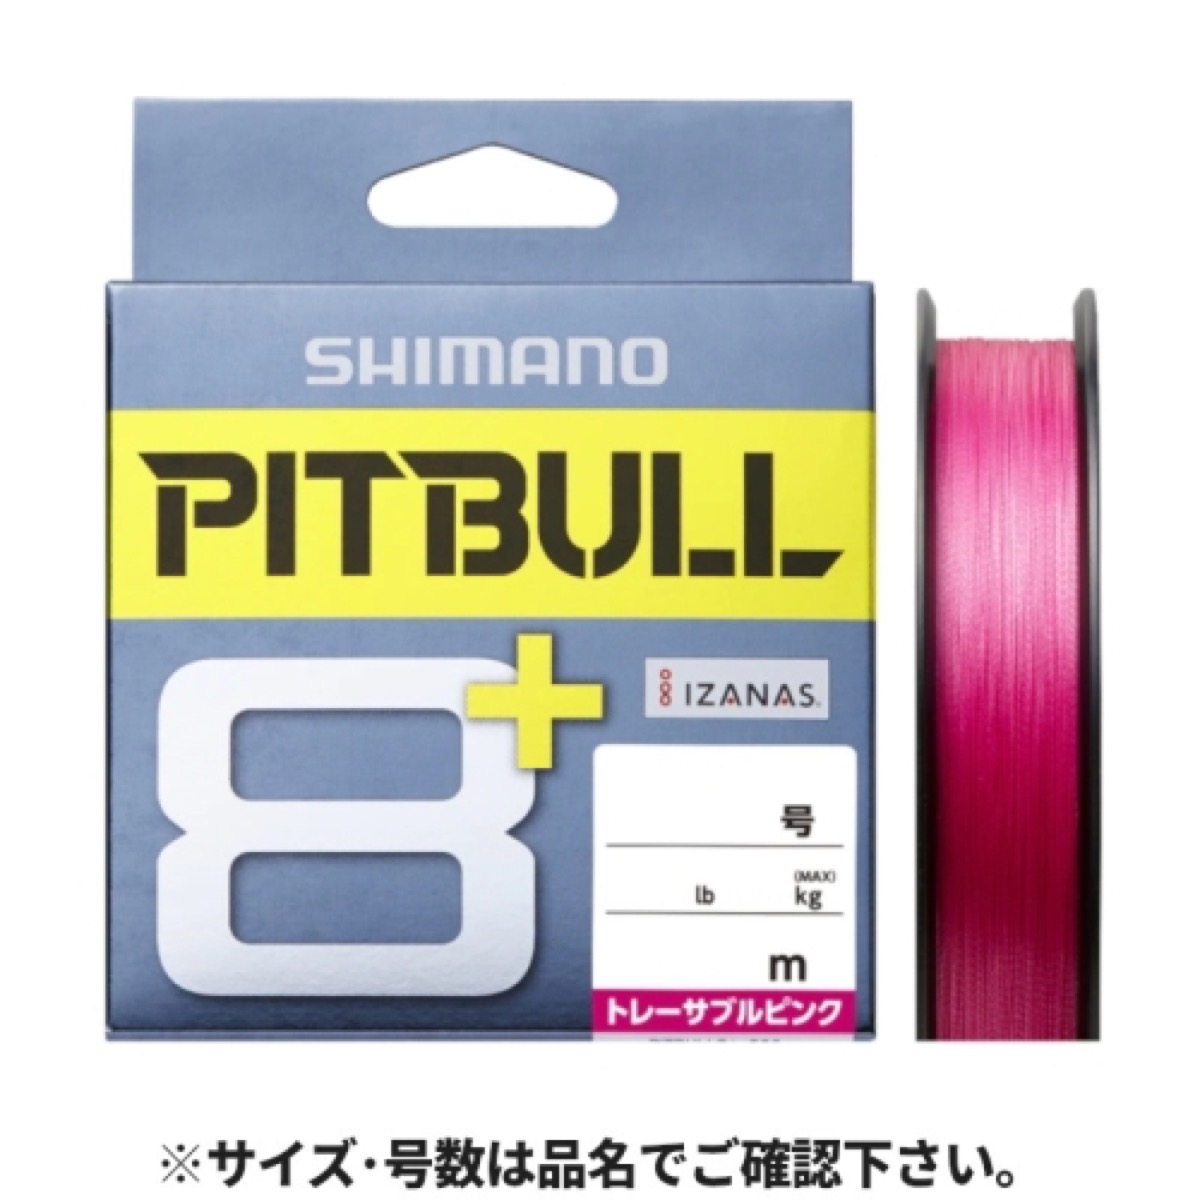 シマノ(SHIMANO) ピットブル8+ LD-M51T 150m 1.5号 トレーサブルピンク ネコポス(メール便)対象商品